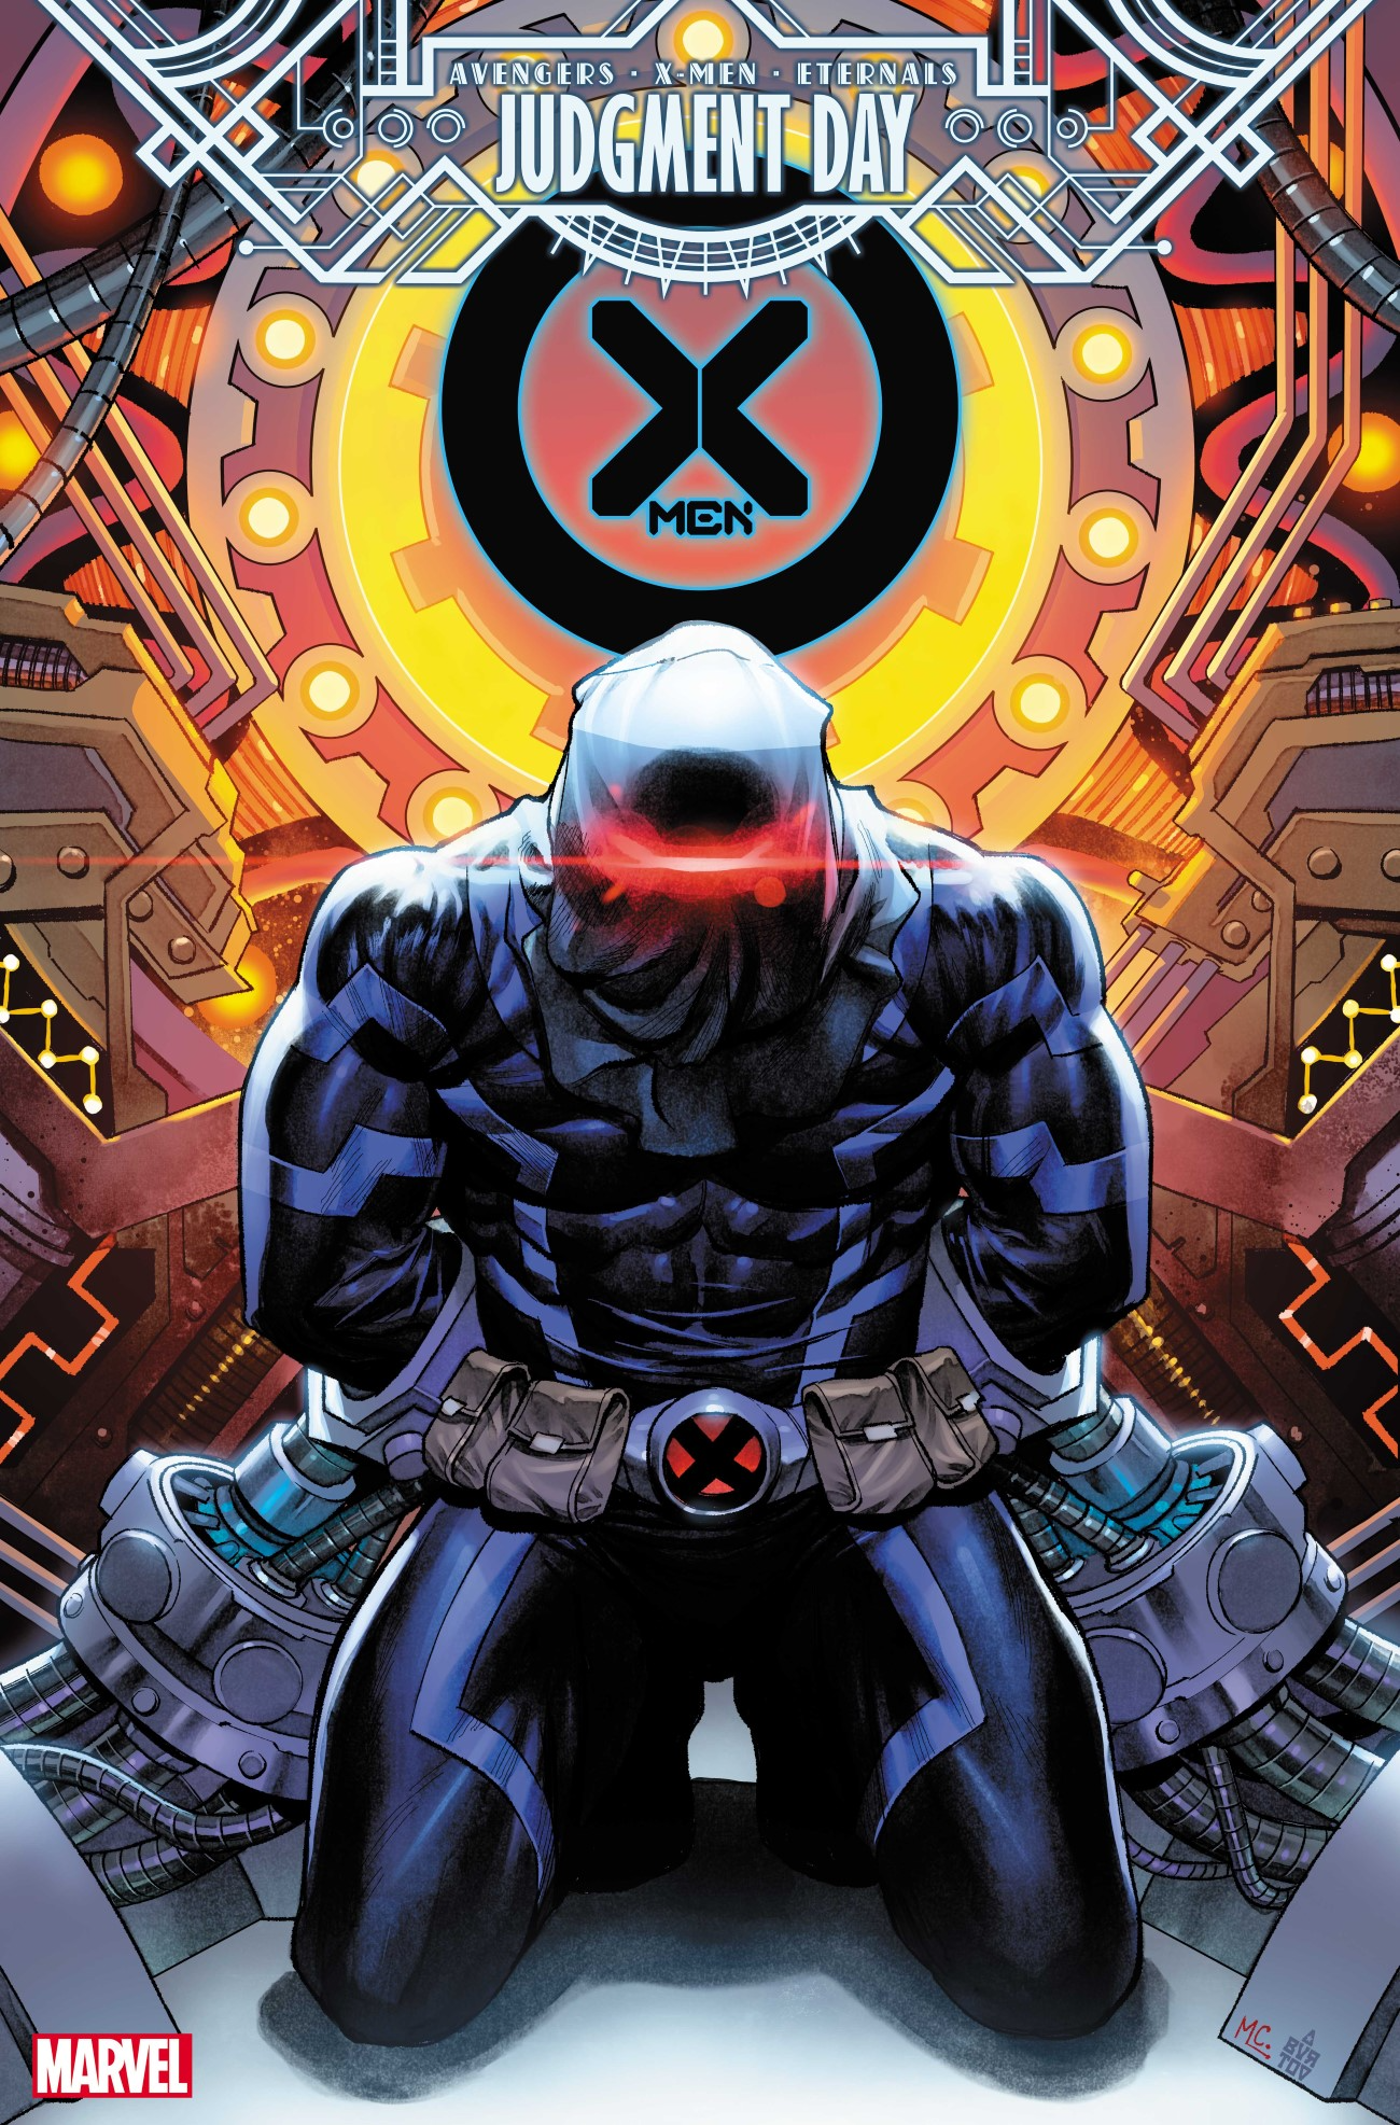 Cyclops’ Darkest Sins Return to Destroy Him in Marvel’s ‘Judgment Day’